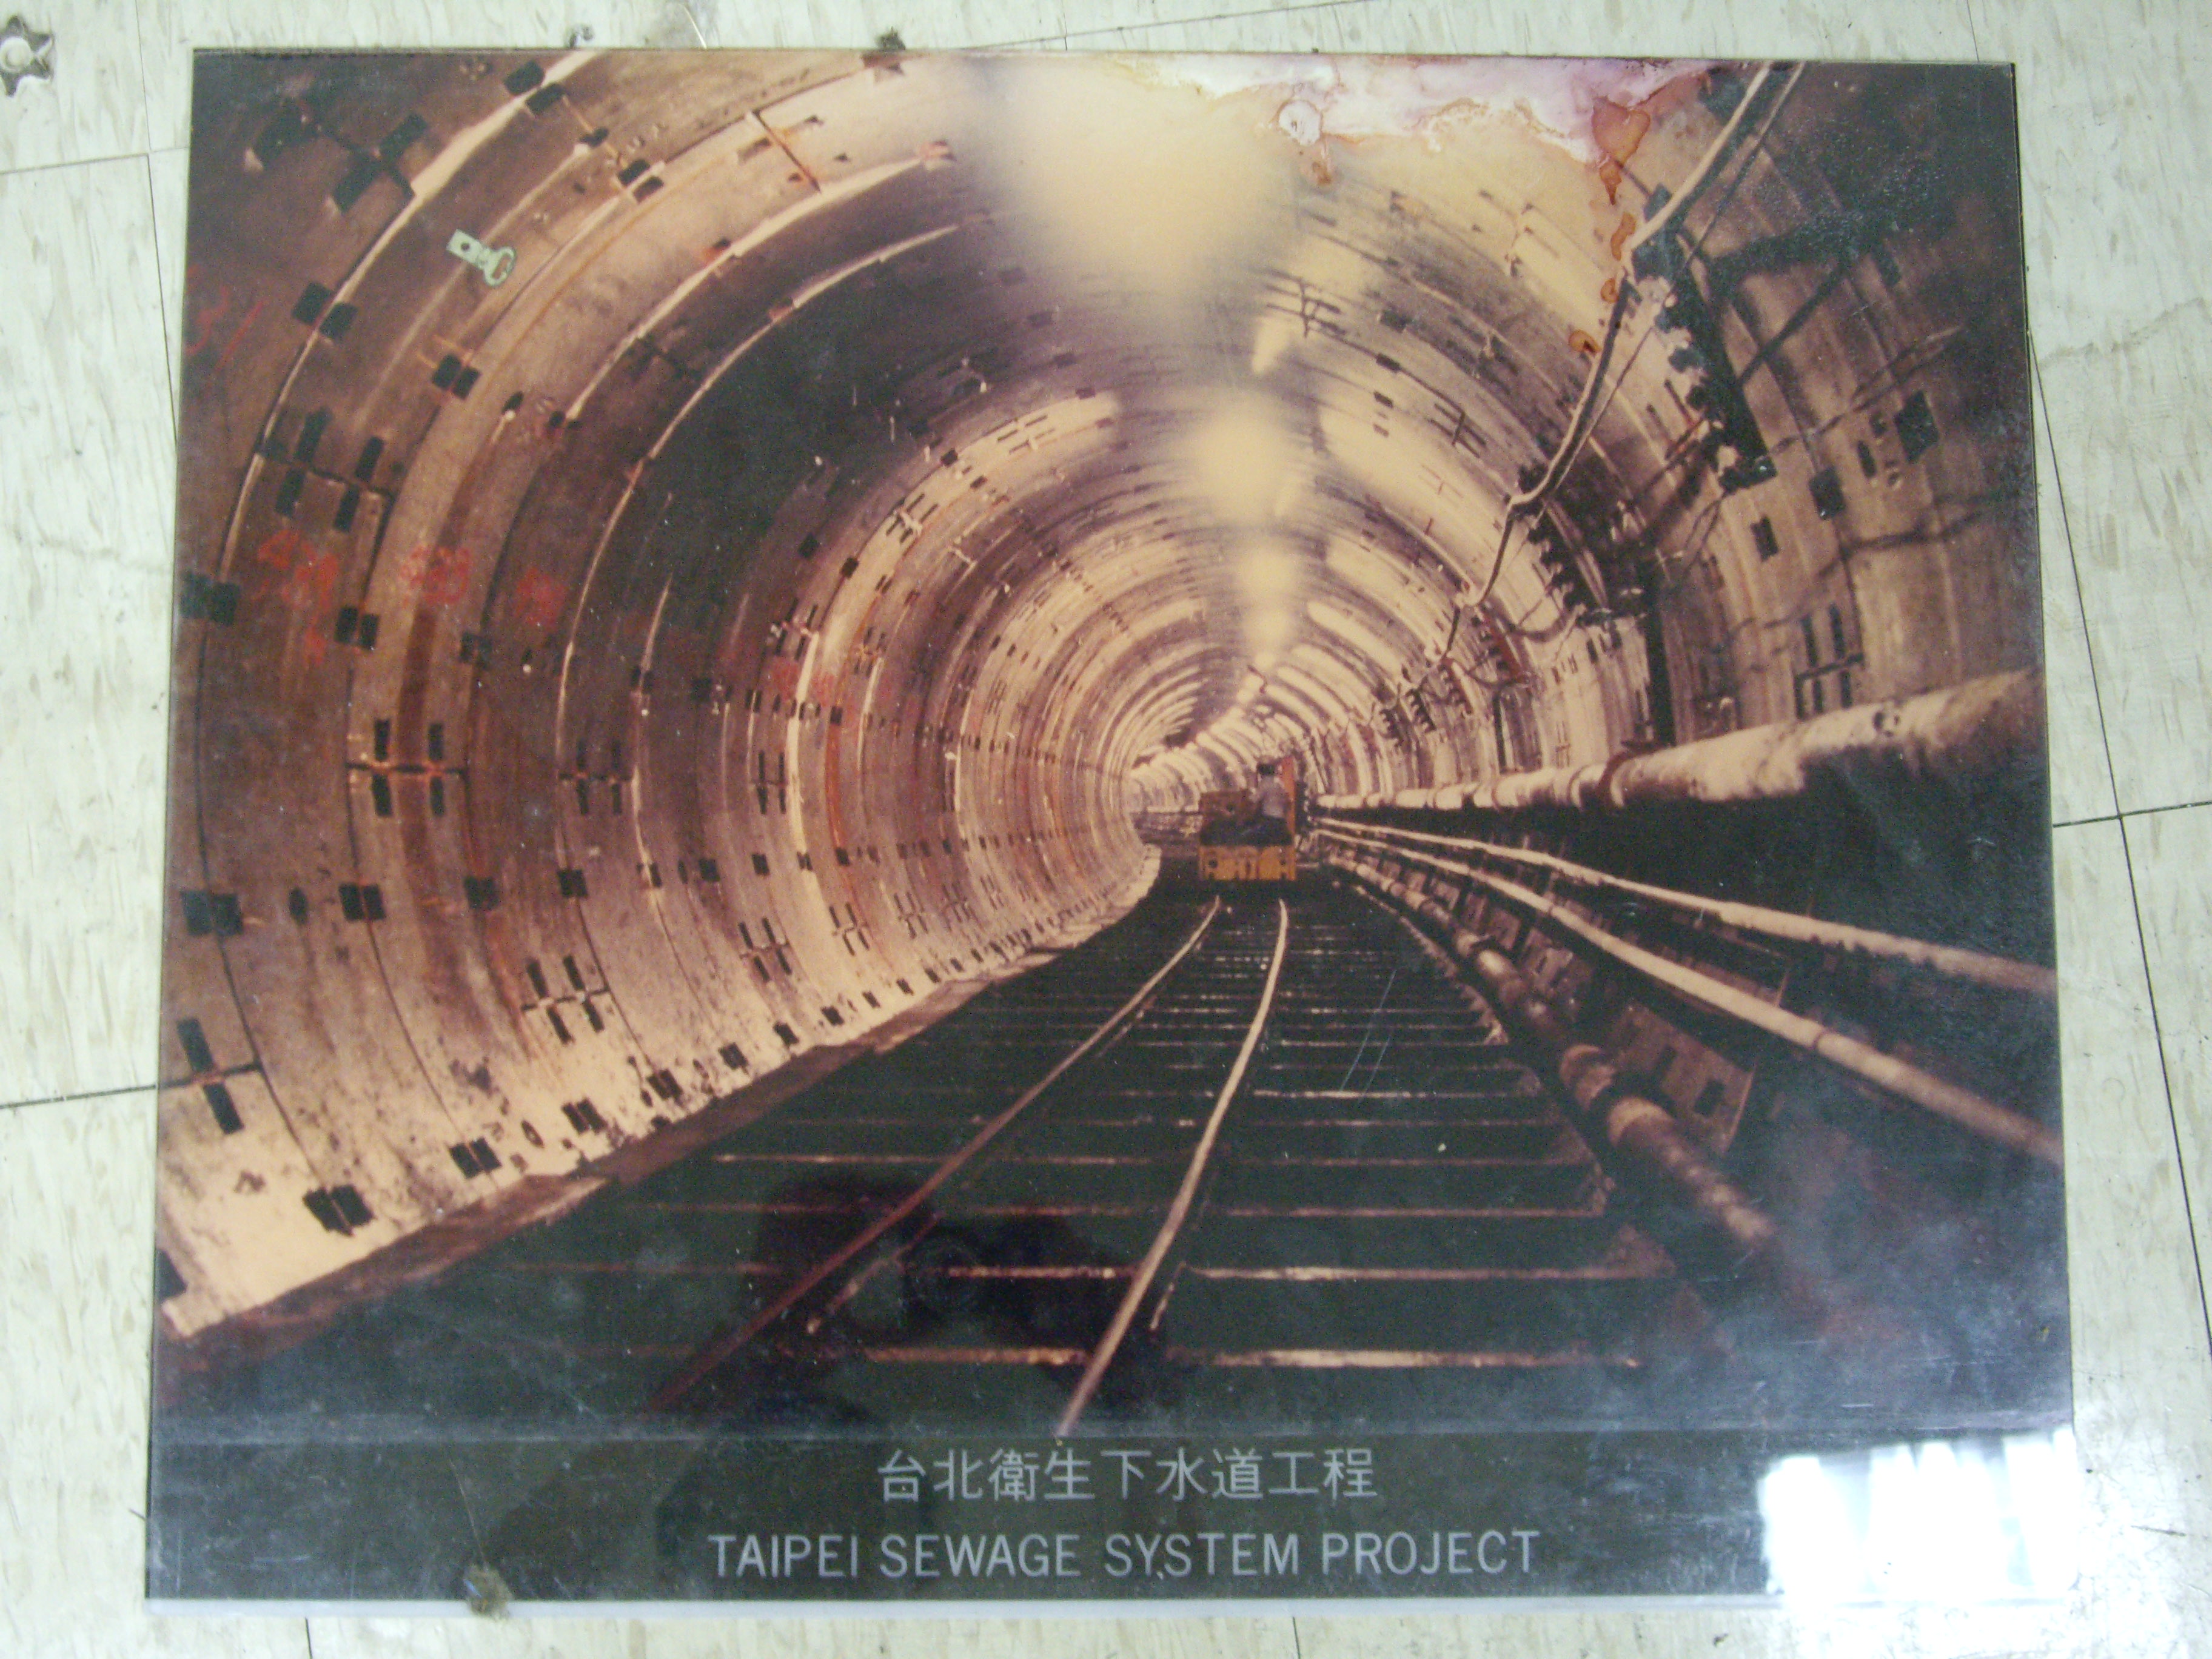 台北衛生下水道工程(裱框照)